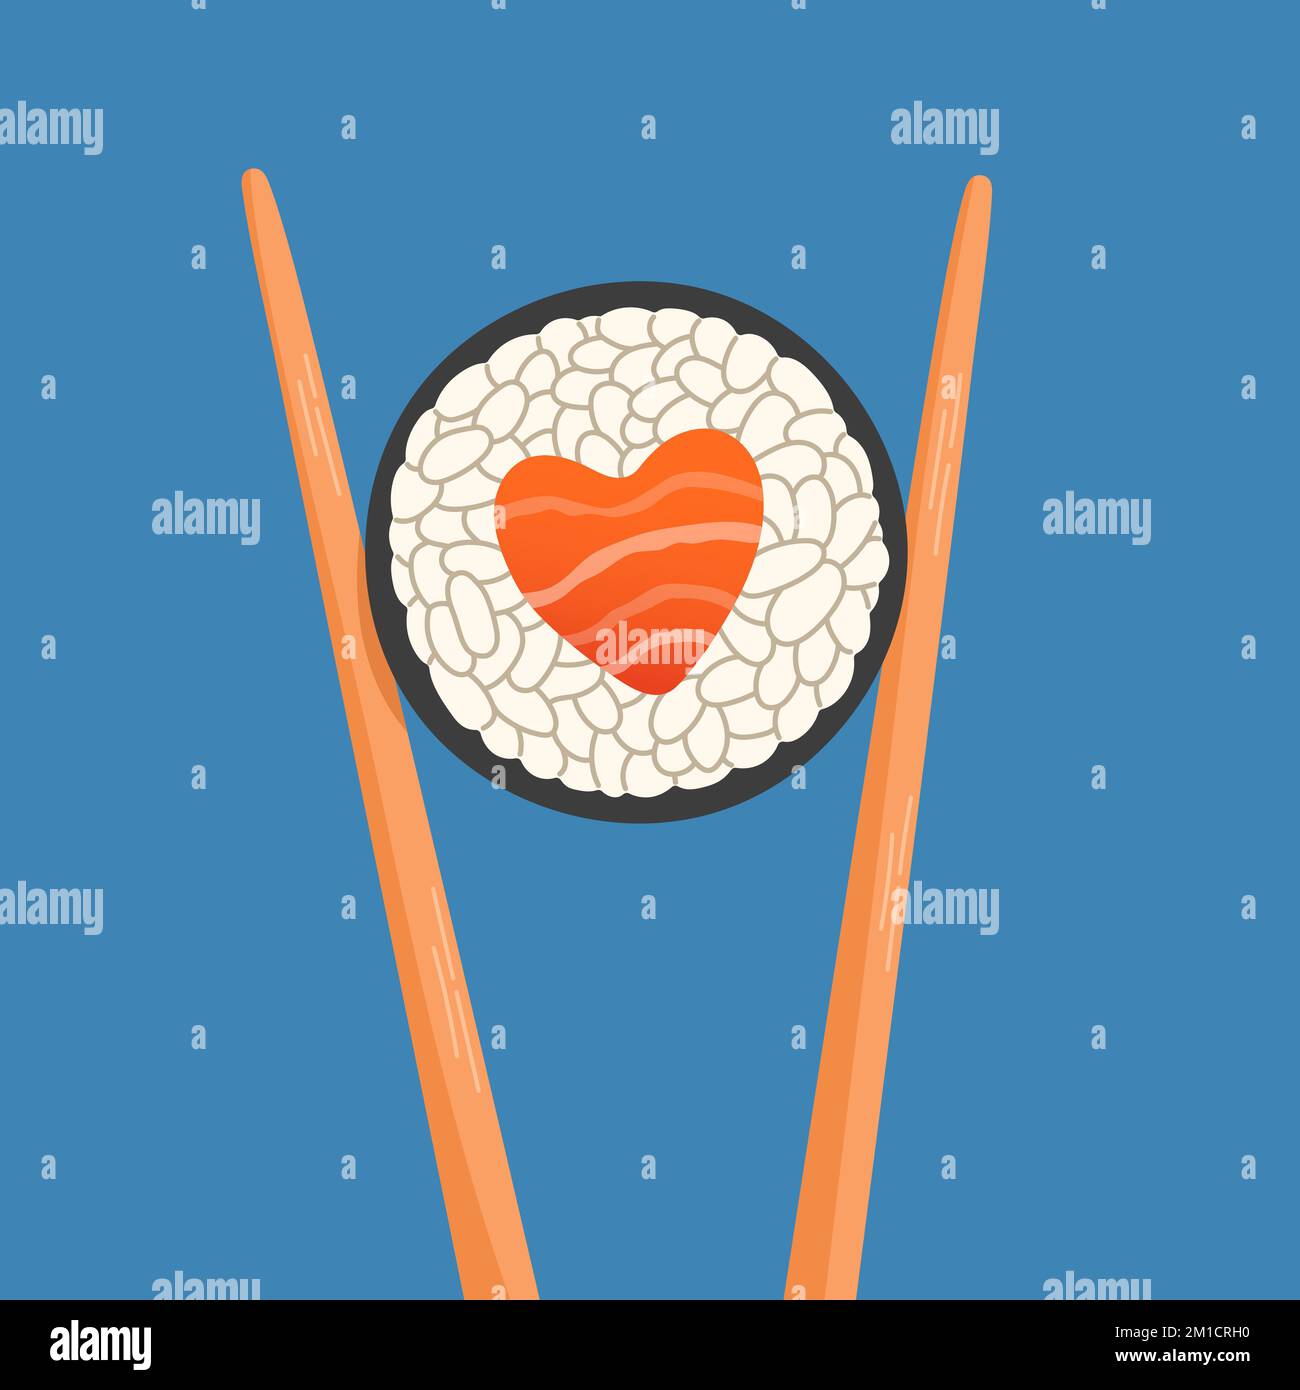 Essstäbchen mit Sushi-Rolle, herzförmige Lachsrolle, Snack-Konzept, susi, Sushi-Restaurant, Meeresfrüchte Stock Vektor